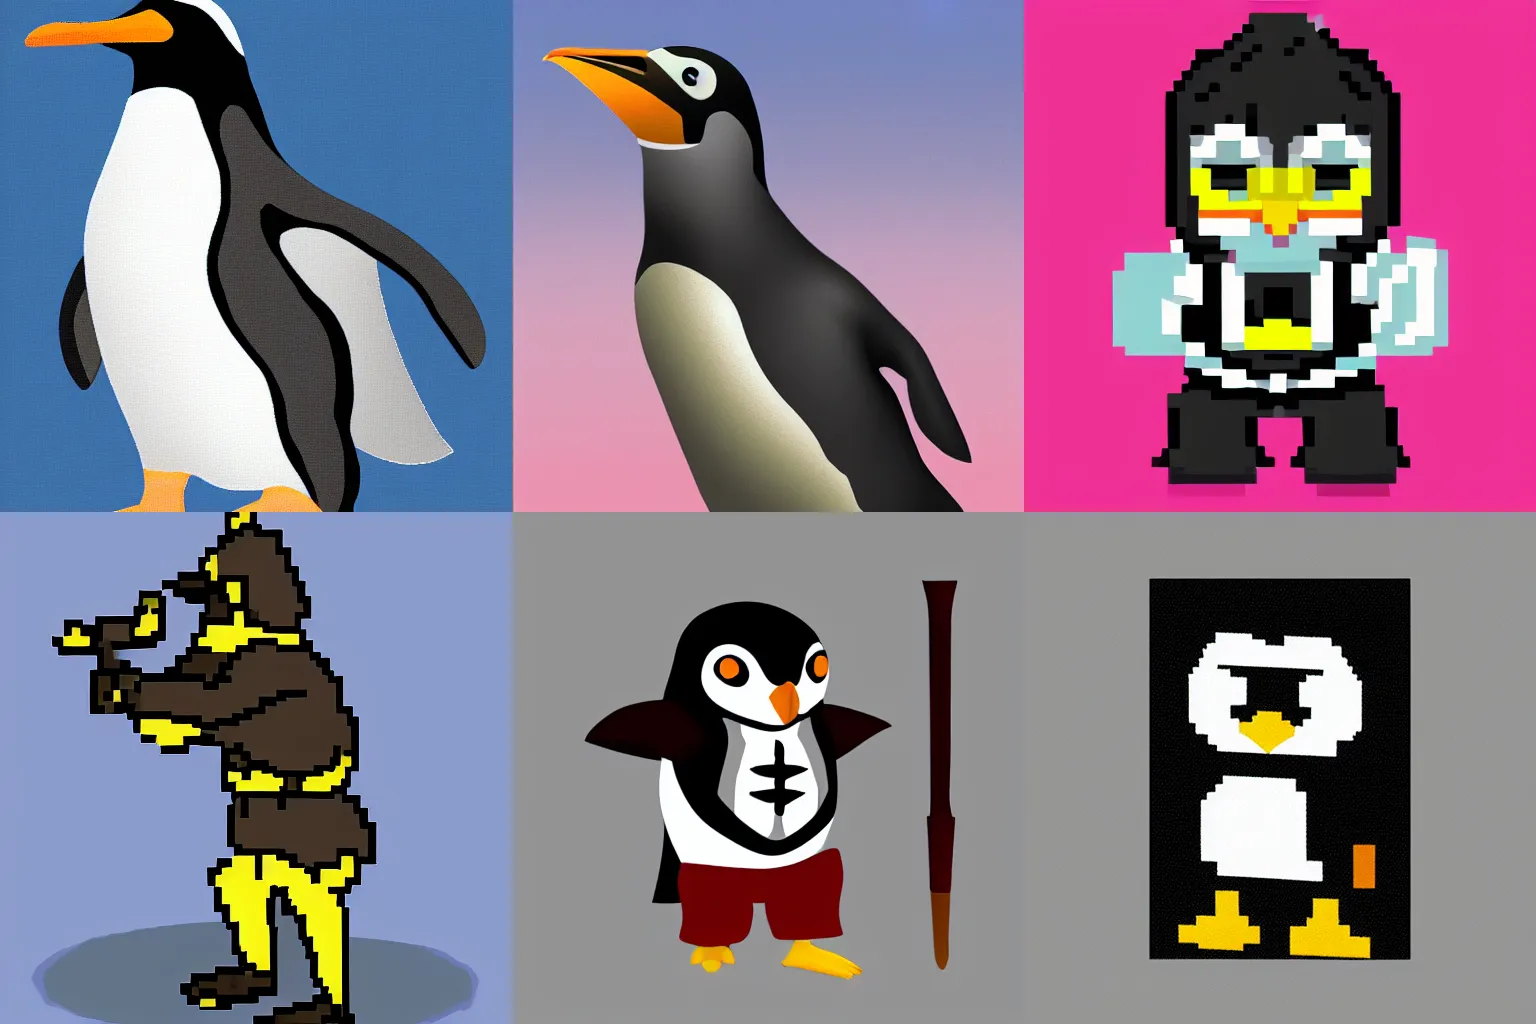 Prompt: 128-bit action portrait of a penguin warrior